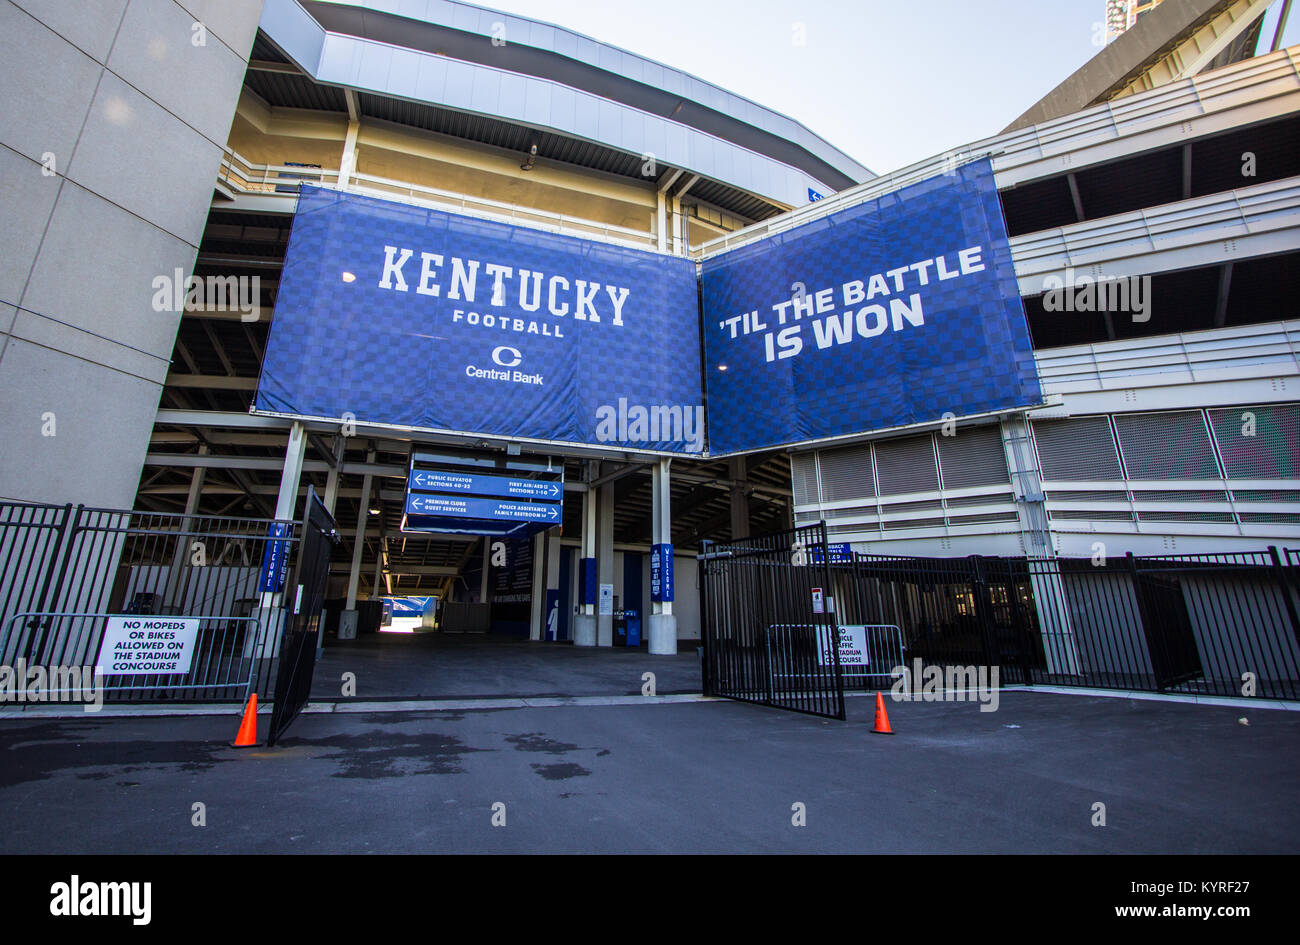 En Lexington, Kentucky, Estados Unidos - 22 de abril de 2016: Entrada a la Commonwealth Stadium. El estadio es el hogar de la Universidad de Kentucky Wildcats equipo de fútbol. Foto de stock